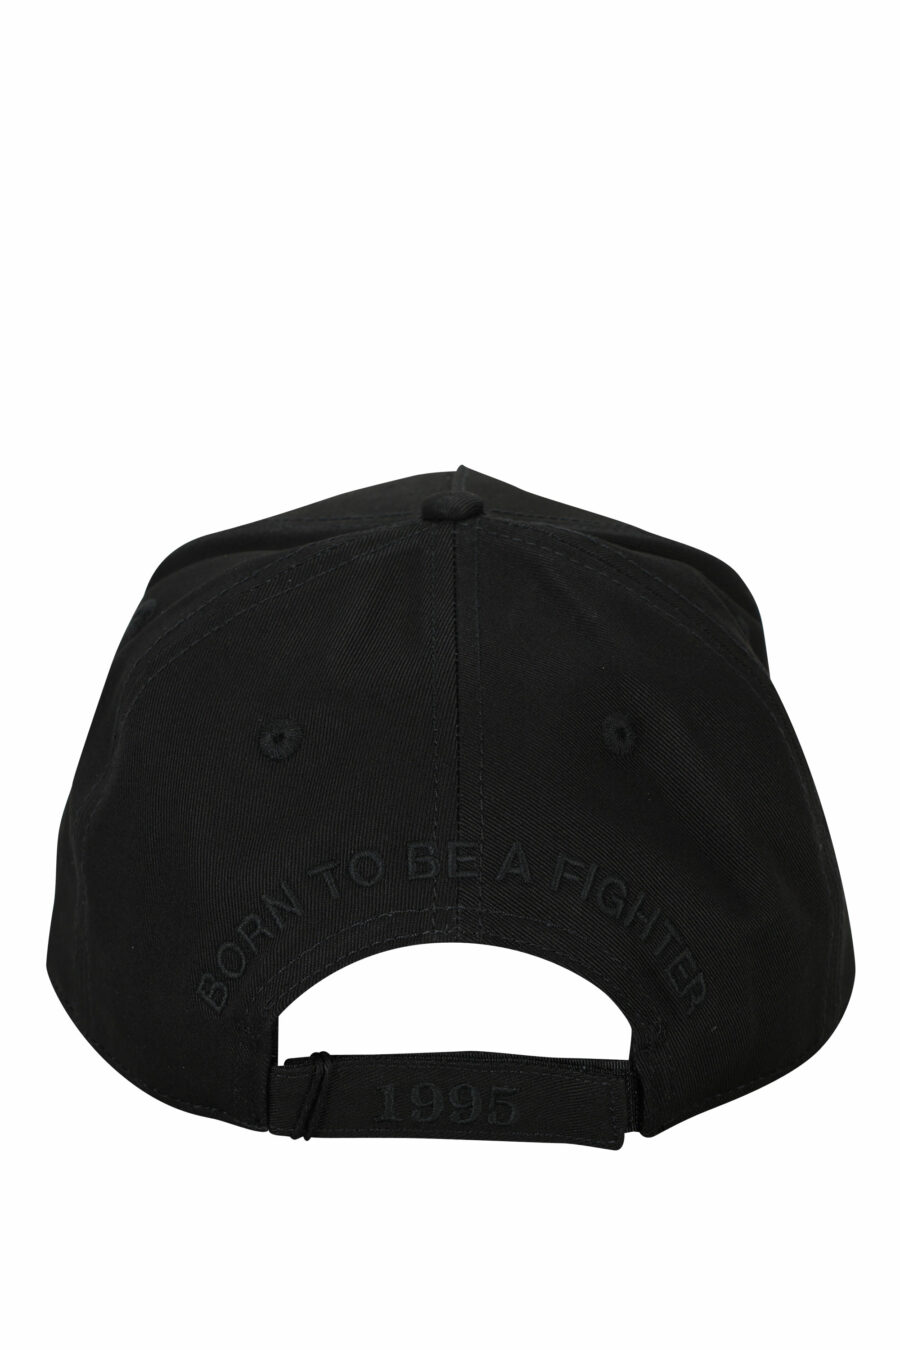 Schwarze Kappe mit einfarbigem, quadratischem Logo - 8055777286487 1